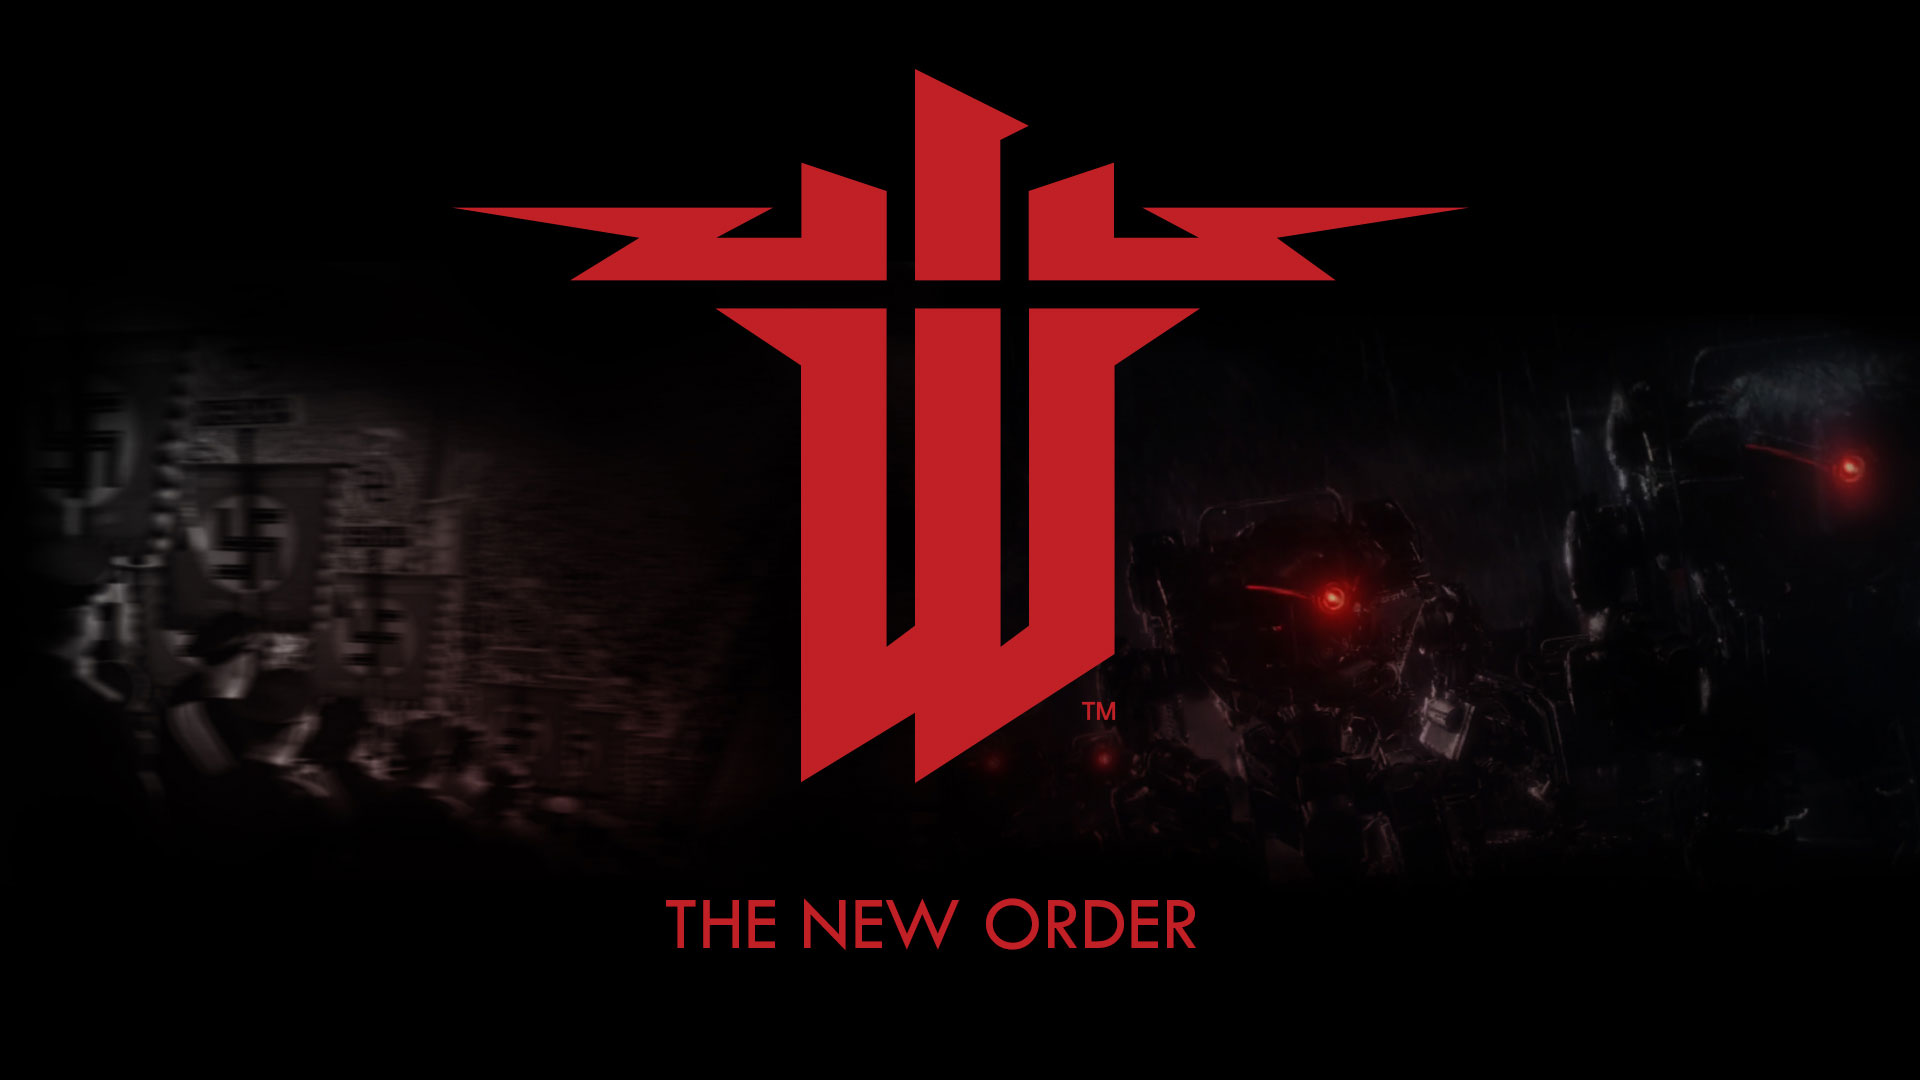 Wolfenstein The New Order 1080p Wallpaper